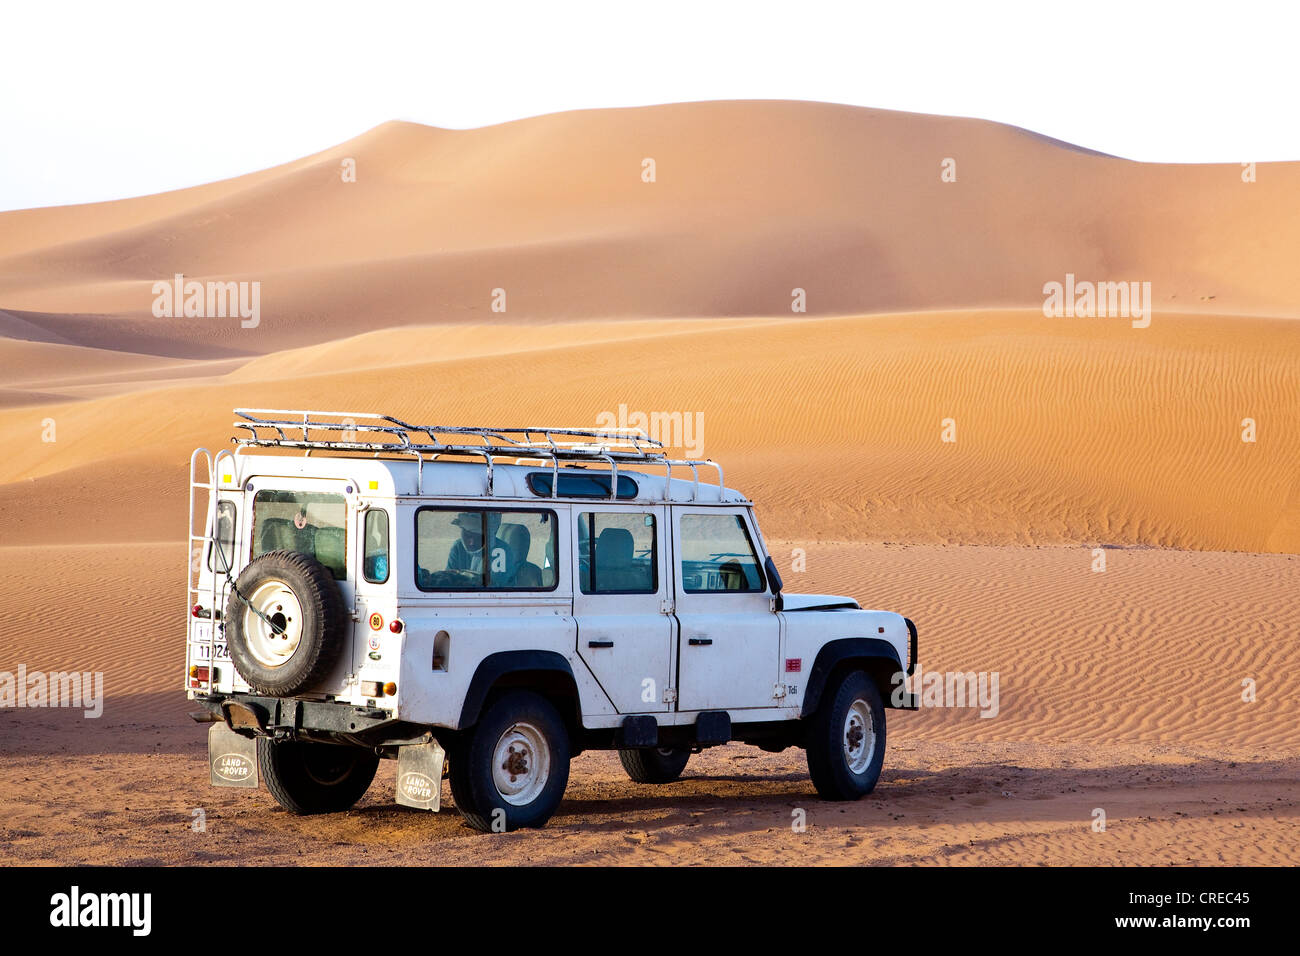 Un véhicule tout-terrain, Land Rover Defender, dunes de l'Erg Chegaga, désert du Sahara, près de Mhamid, Maroc, Afrique Banque D'Images